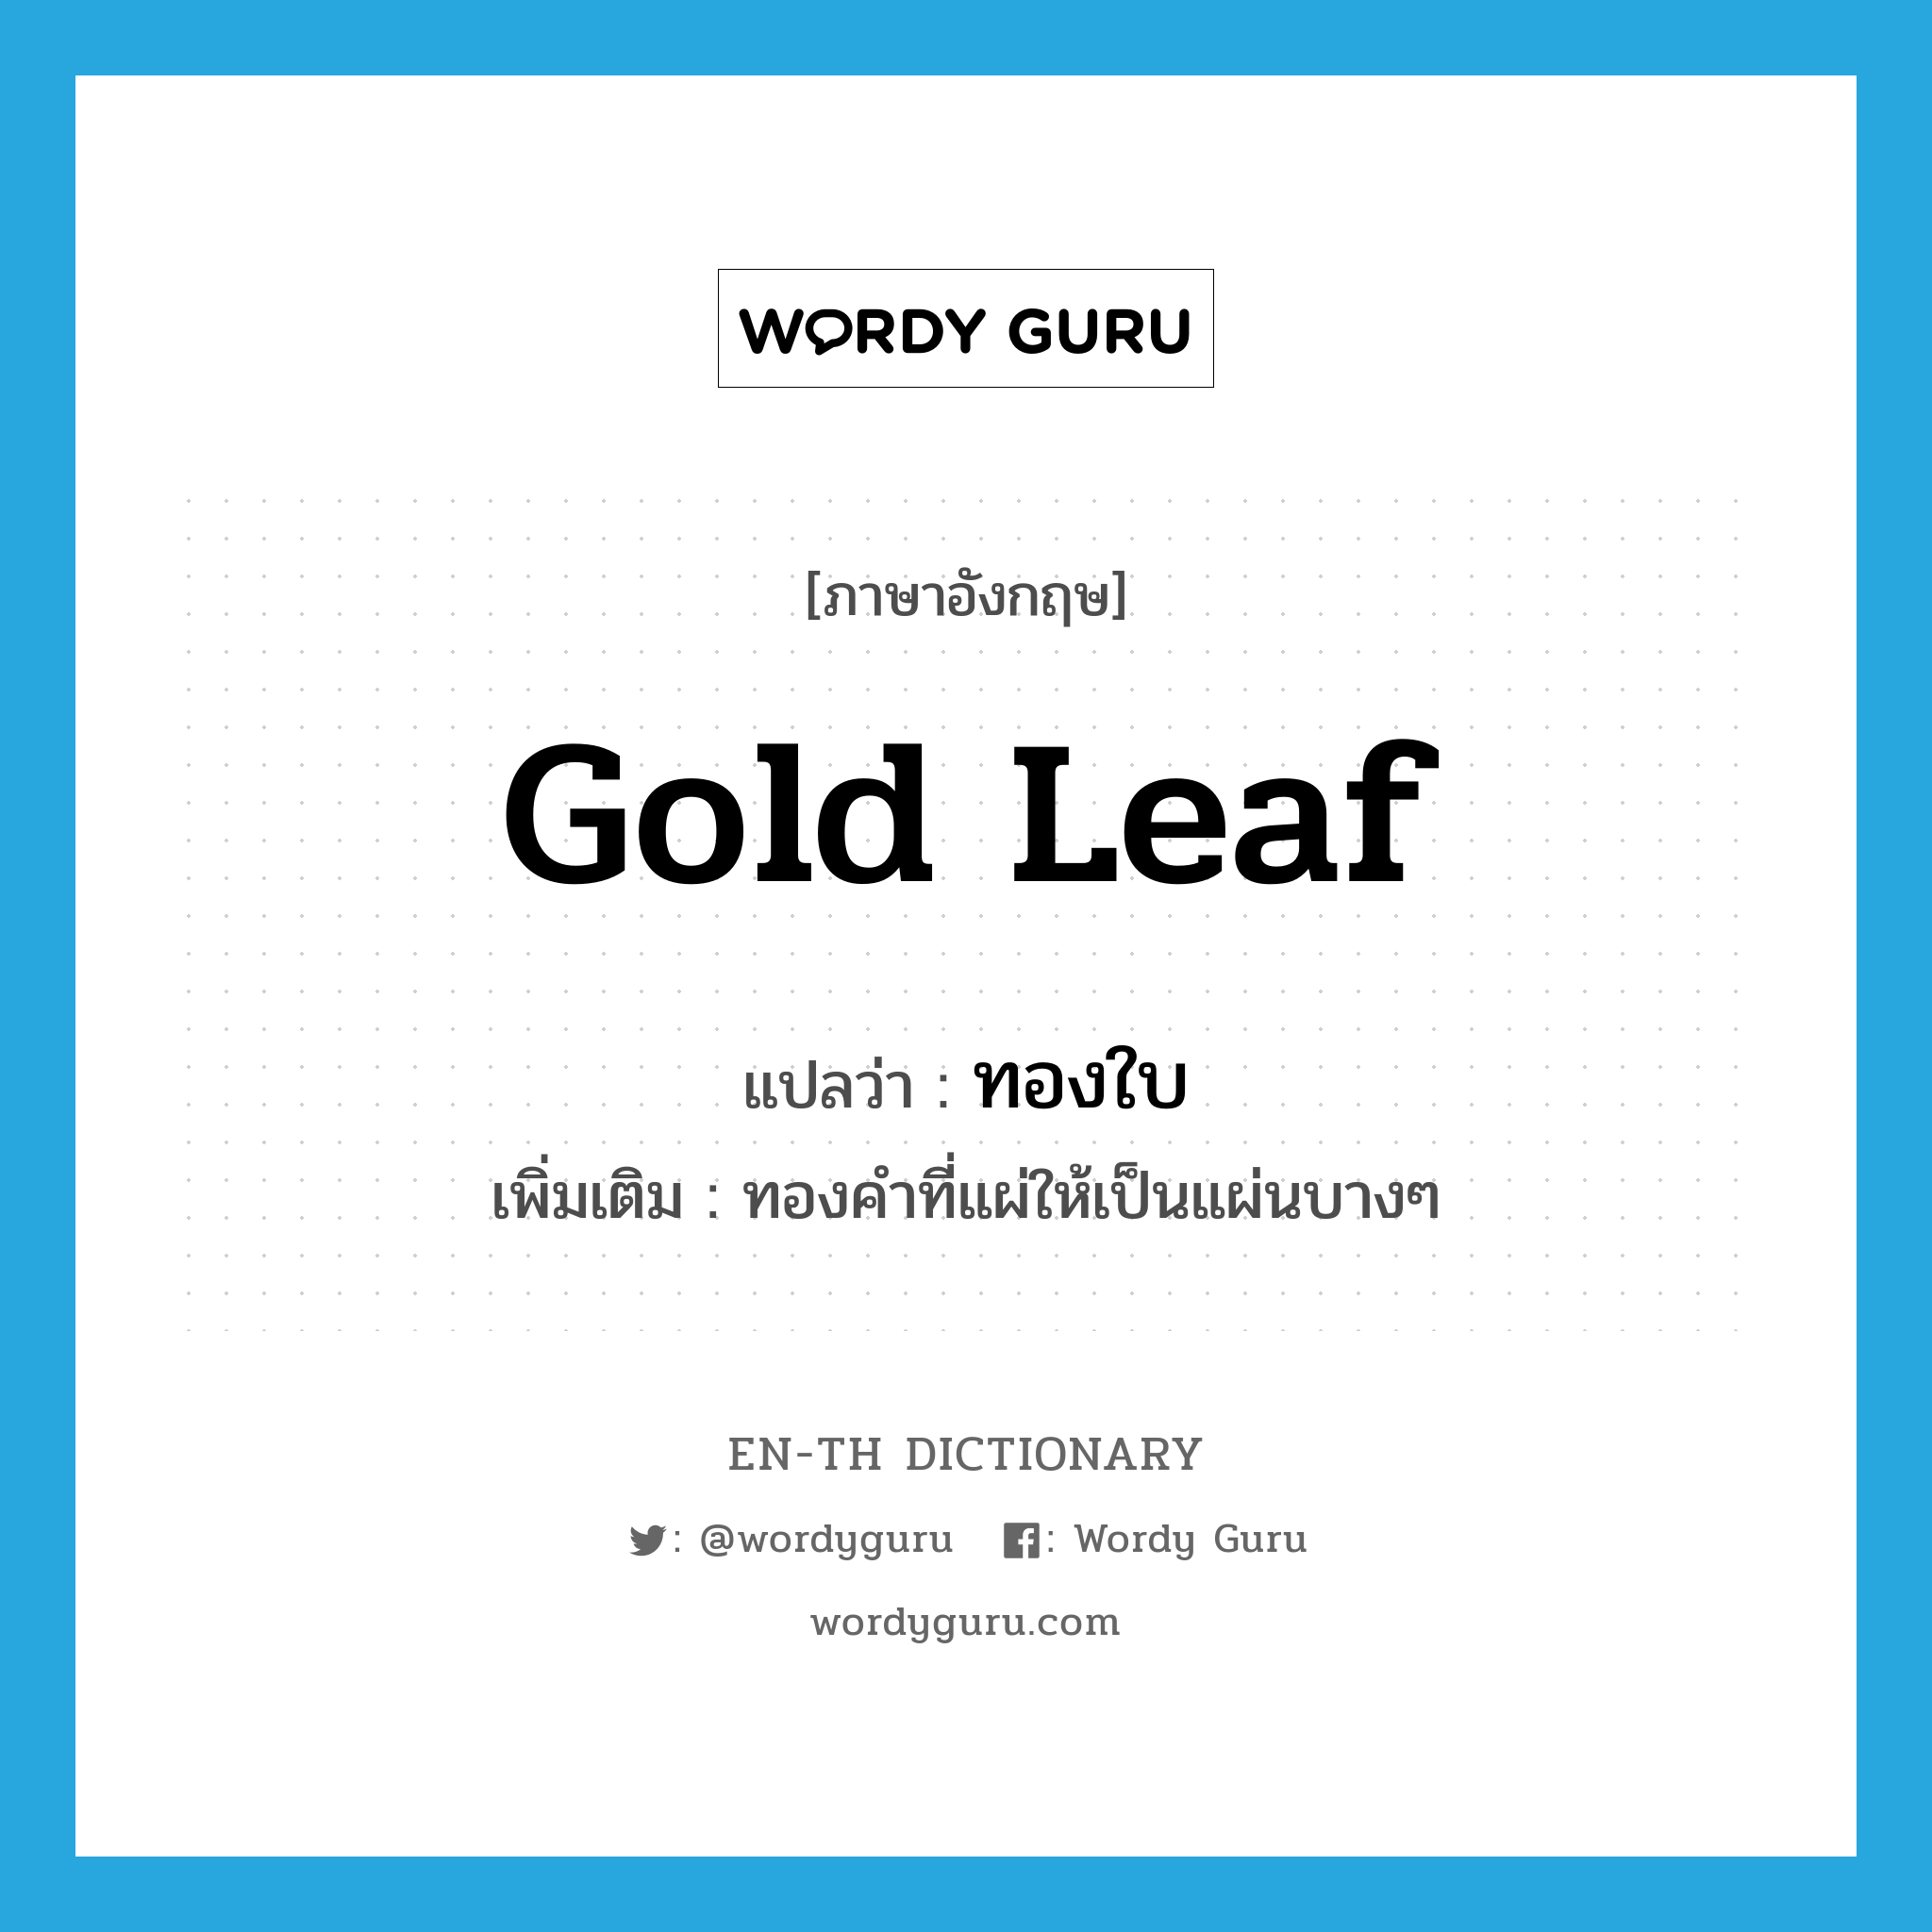 gold leaf แปลว่า?, คำศัพท์ภาษาอังกฤษ gold leaf แปลว่า ทองใบ ประเภท N เพิ่มเติม ทองคำที่แผ่ให้เป็นแผ่นบางๆ หมวด N